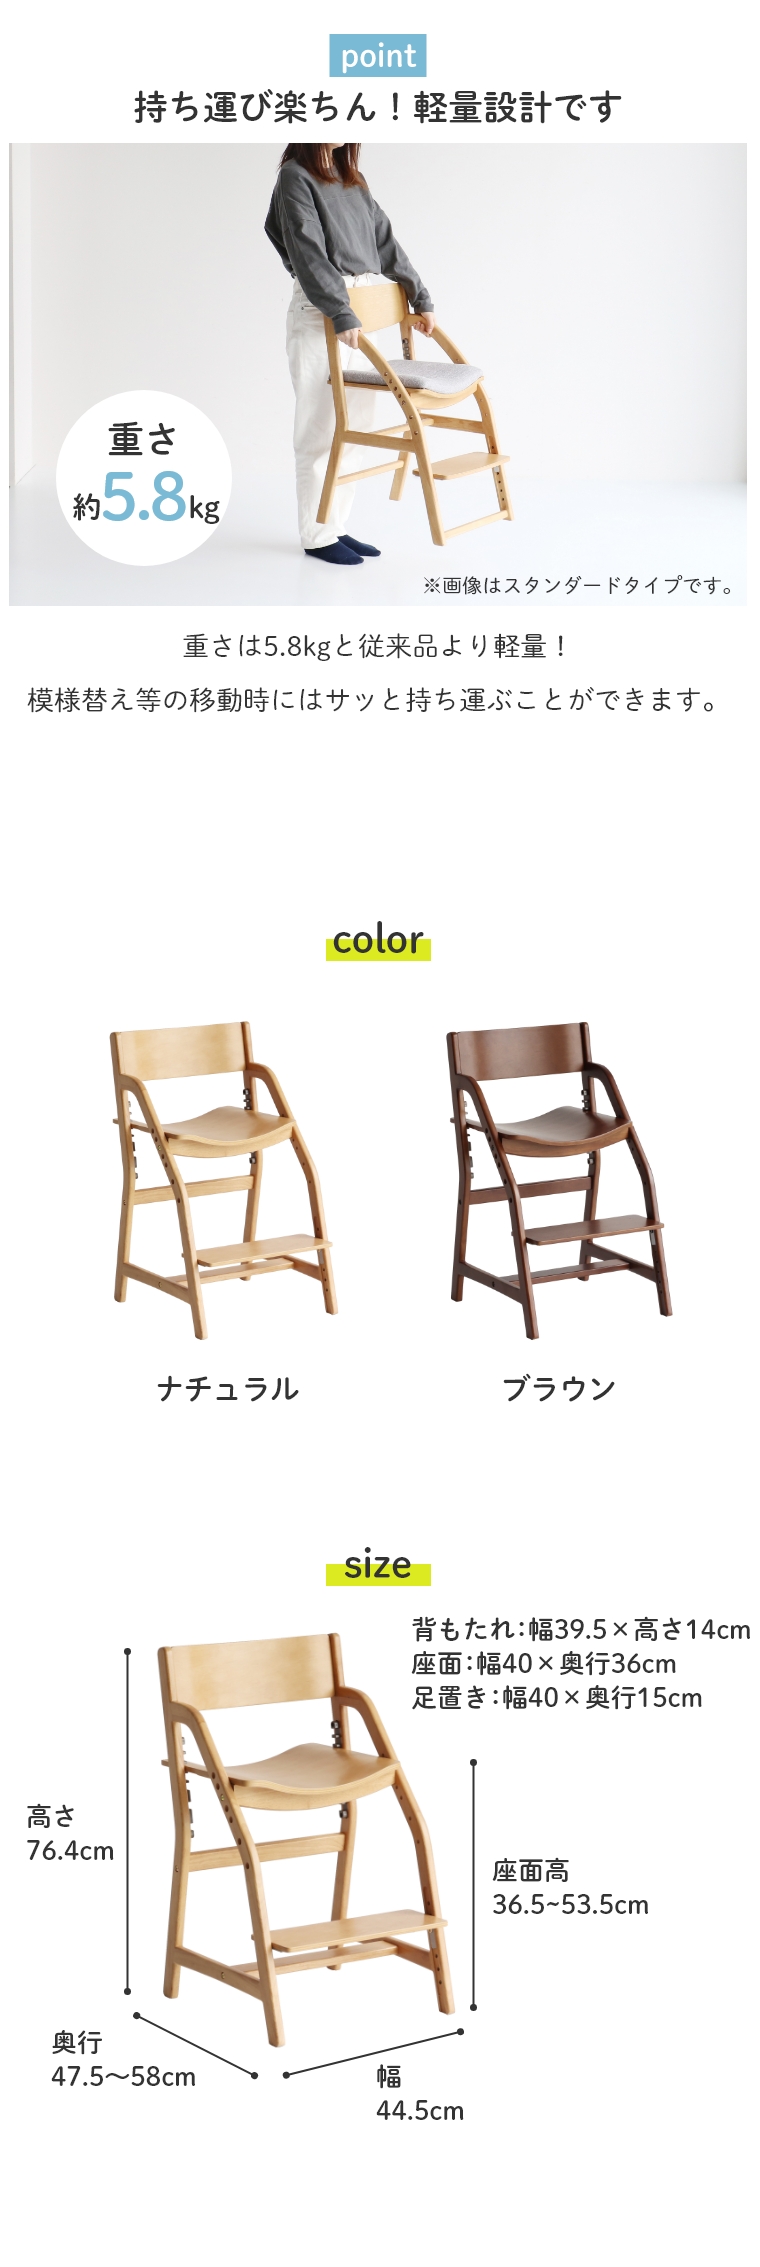 学習イス 姿勢 軽量 E-toko キッズチェア エコノミー 学習椅子 学習チェア 木製チェア 高さ調節 高さ足置き 安全 シンプル リビング ダイニング 木製 JUC-3661